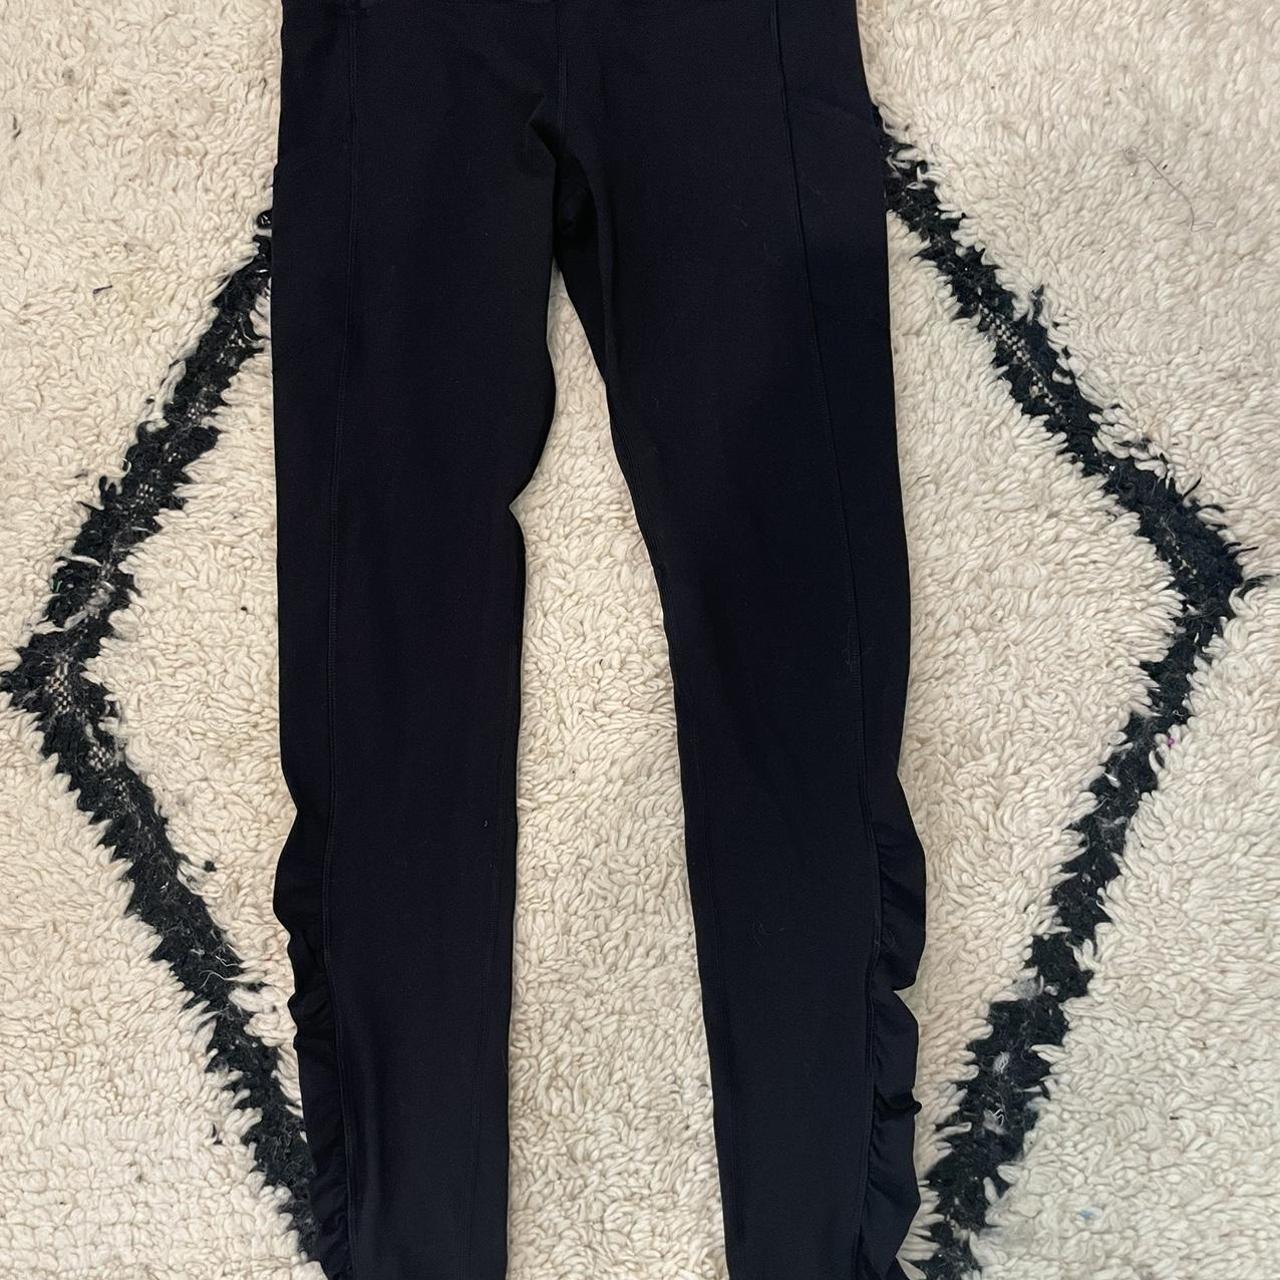 Lululemon full length scrunch black leggings no tag